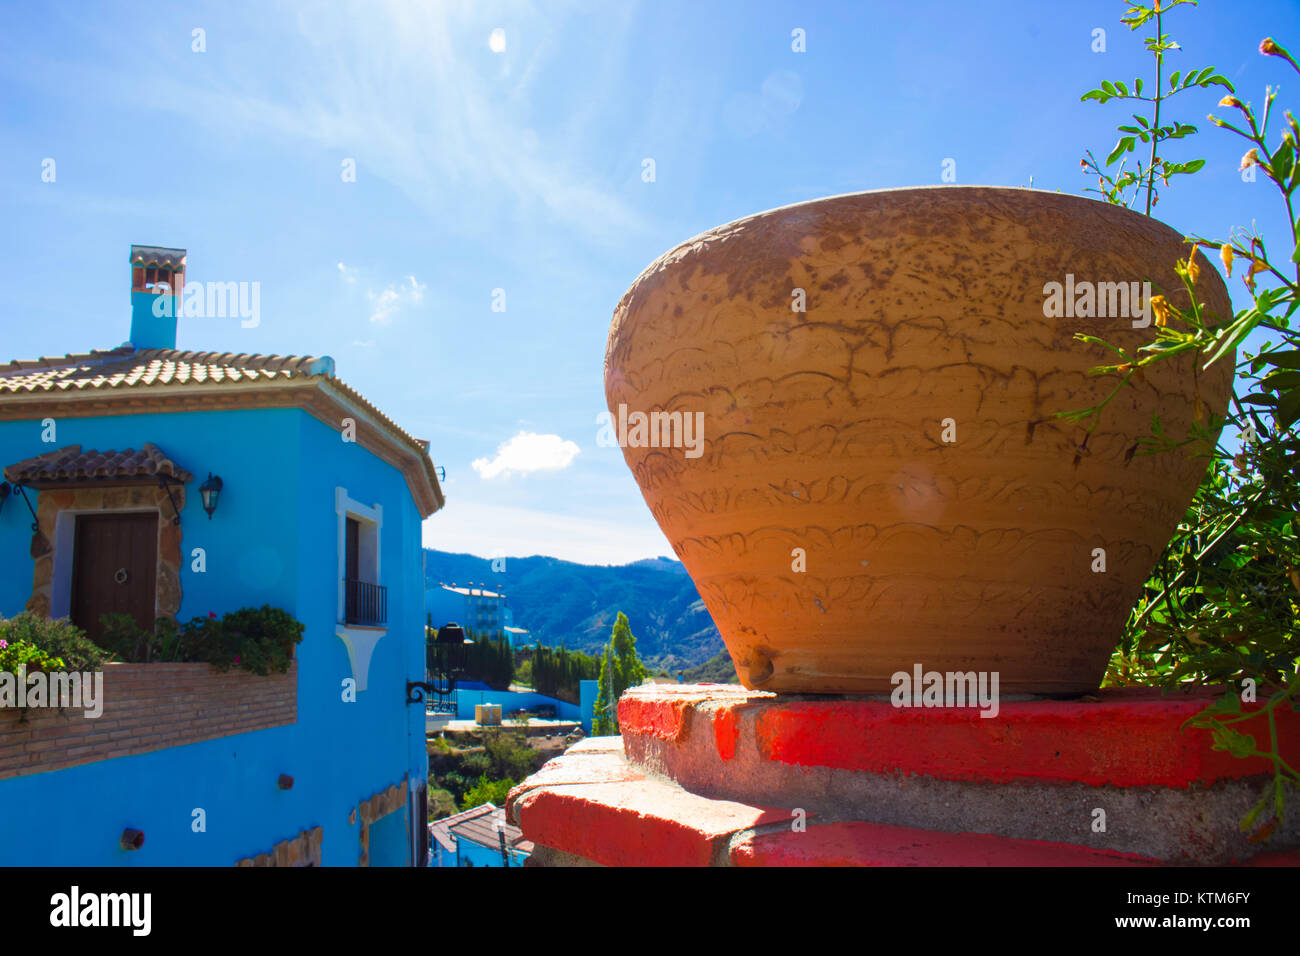 Juzcar smurf Village. Provinz Malaga, Costa del Sol, Andalusien, Spanien. Bild aufgenommen - 22. Oktober 2017. Stockfoto